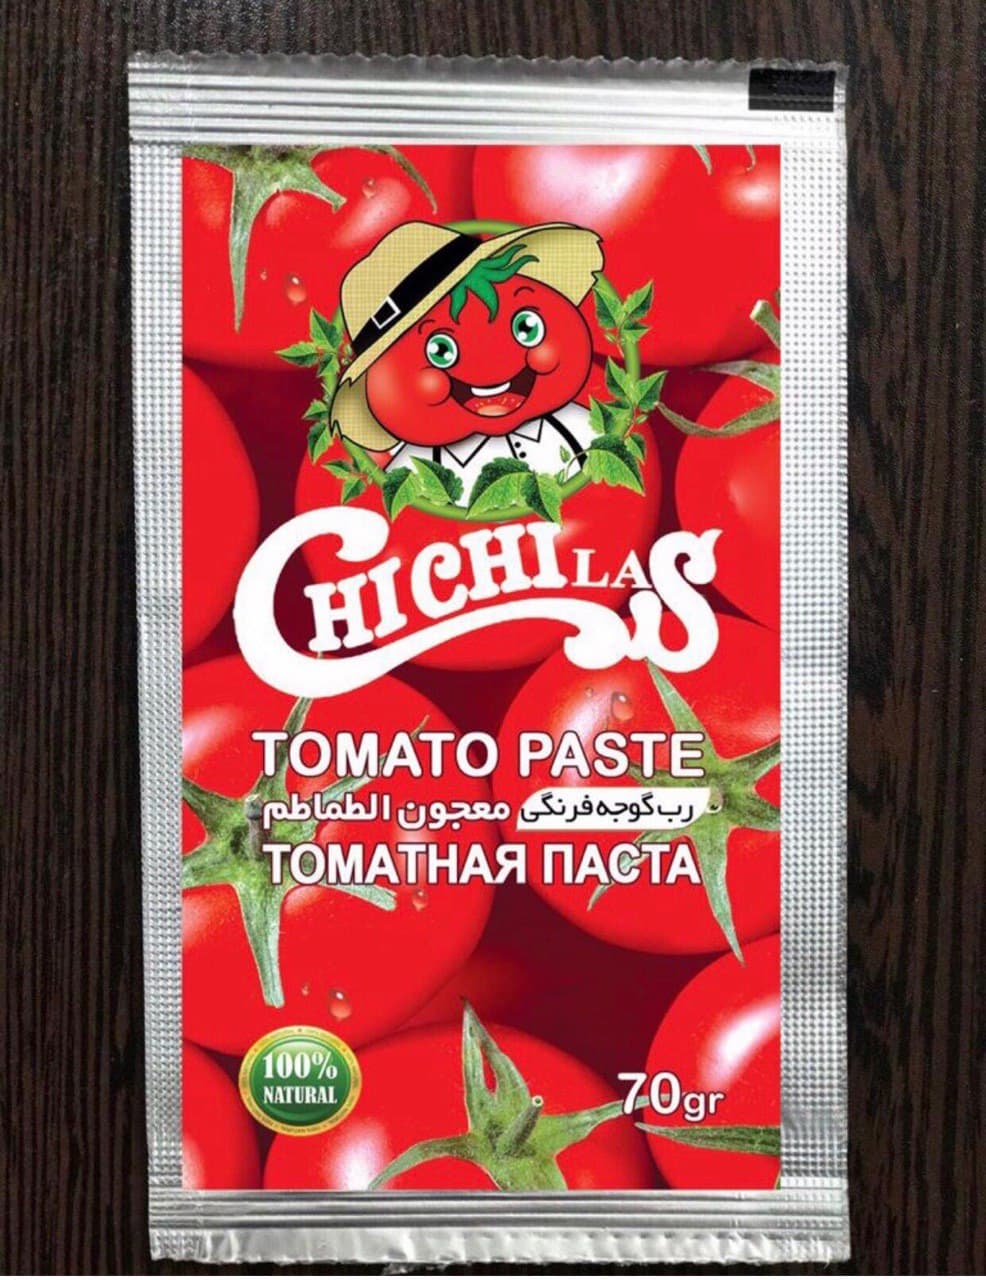 رب گوجه فرنگی ساشه با کیفیت تضمینی